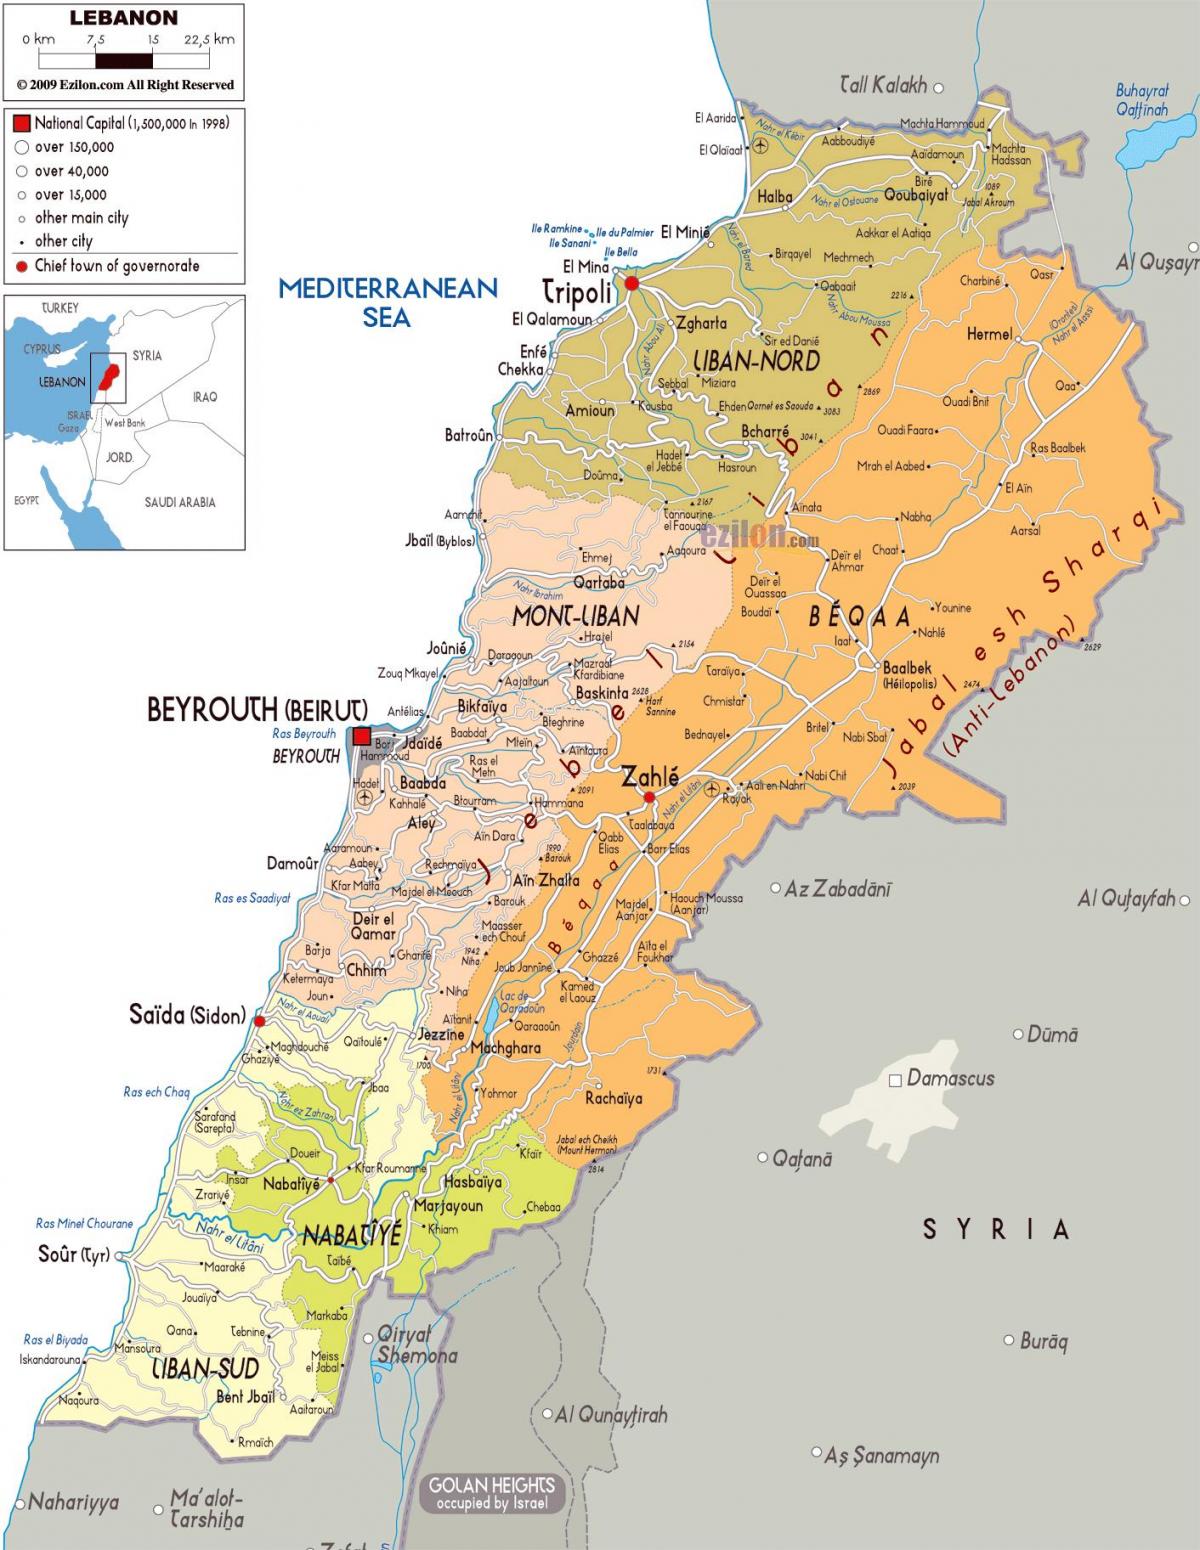 레바논 지도 대한 자세한